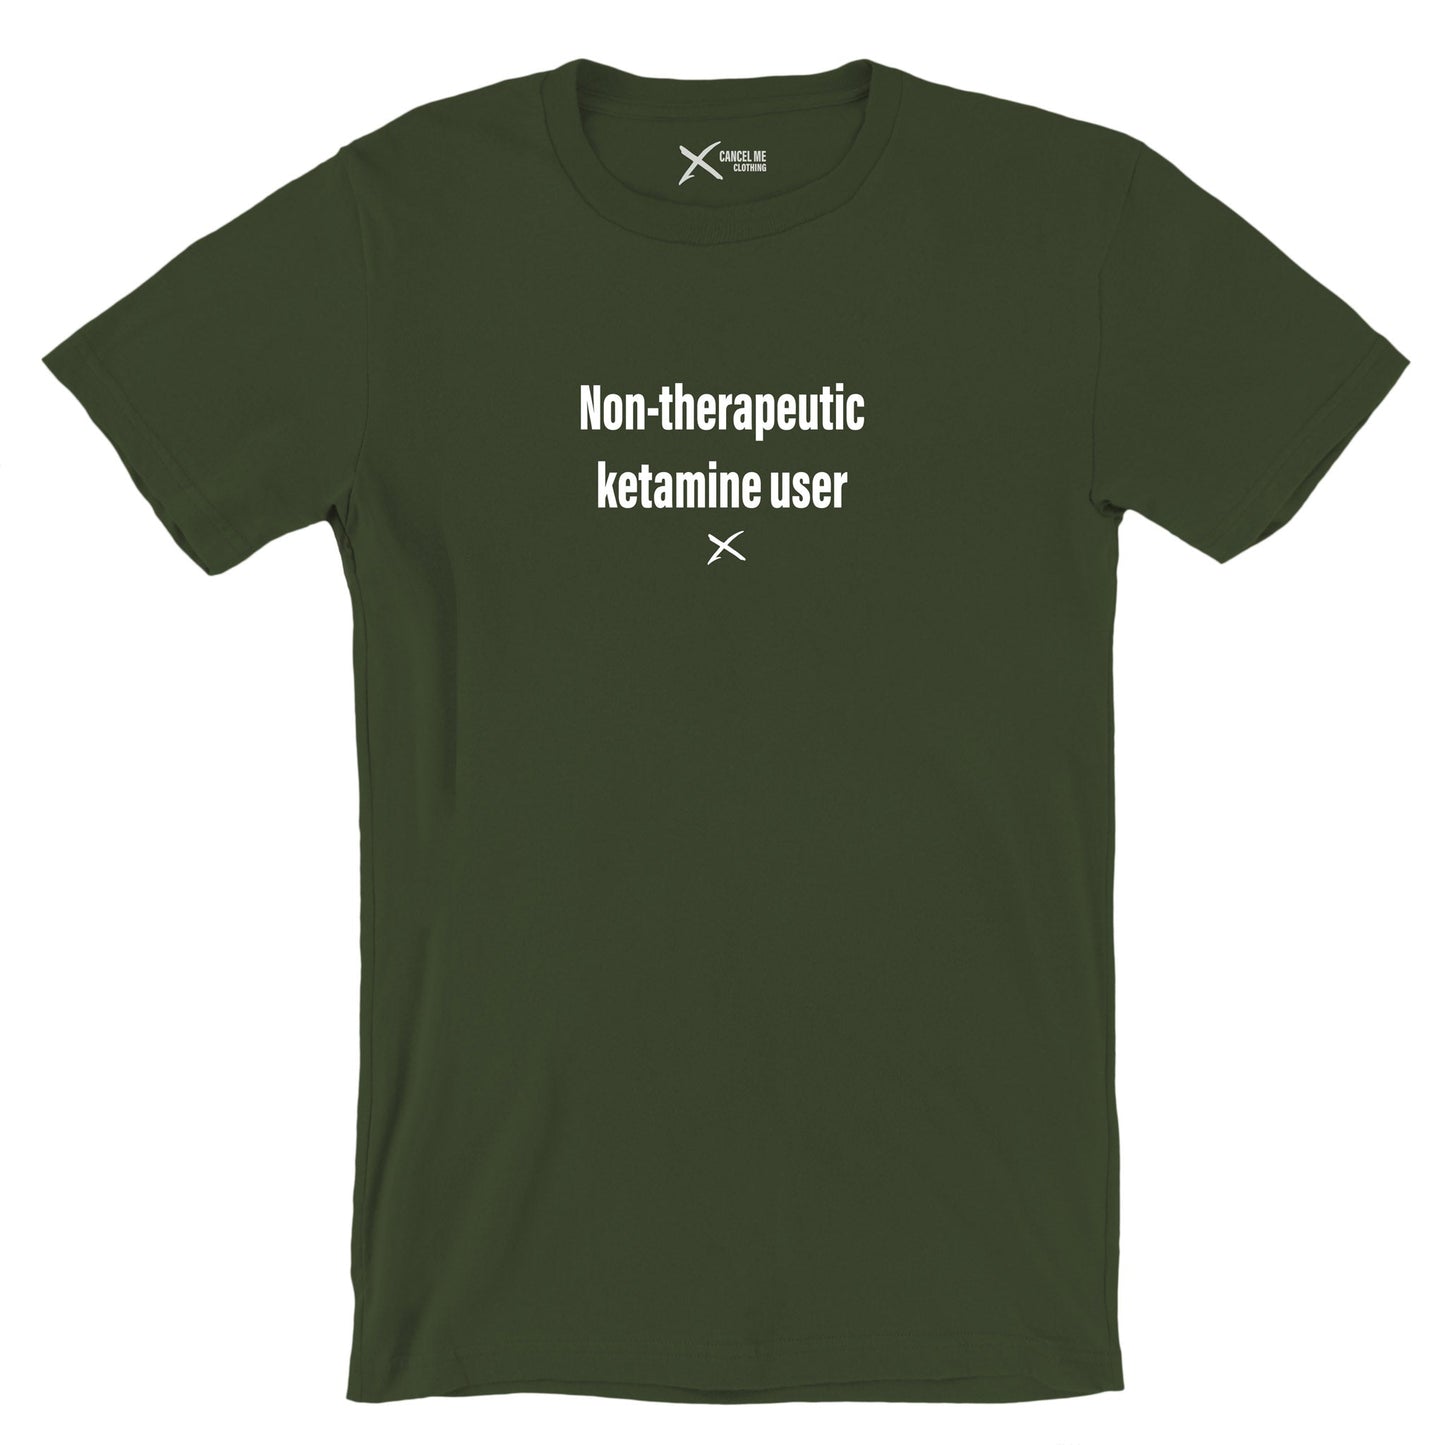 Non-therapeutic ketamine user - Shirt